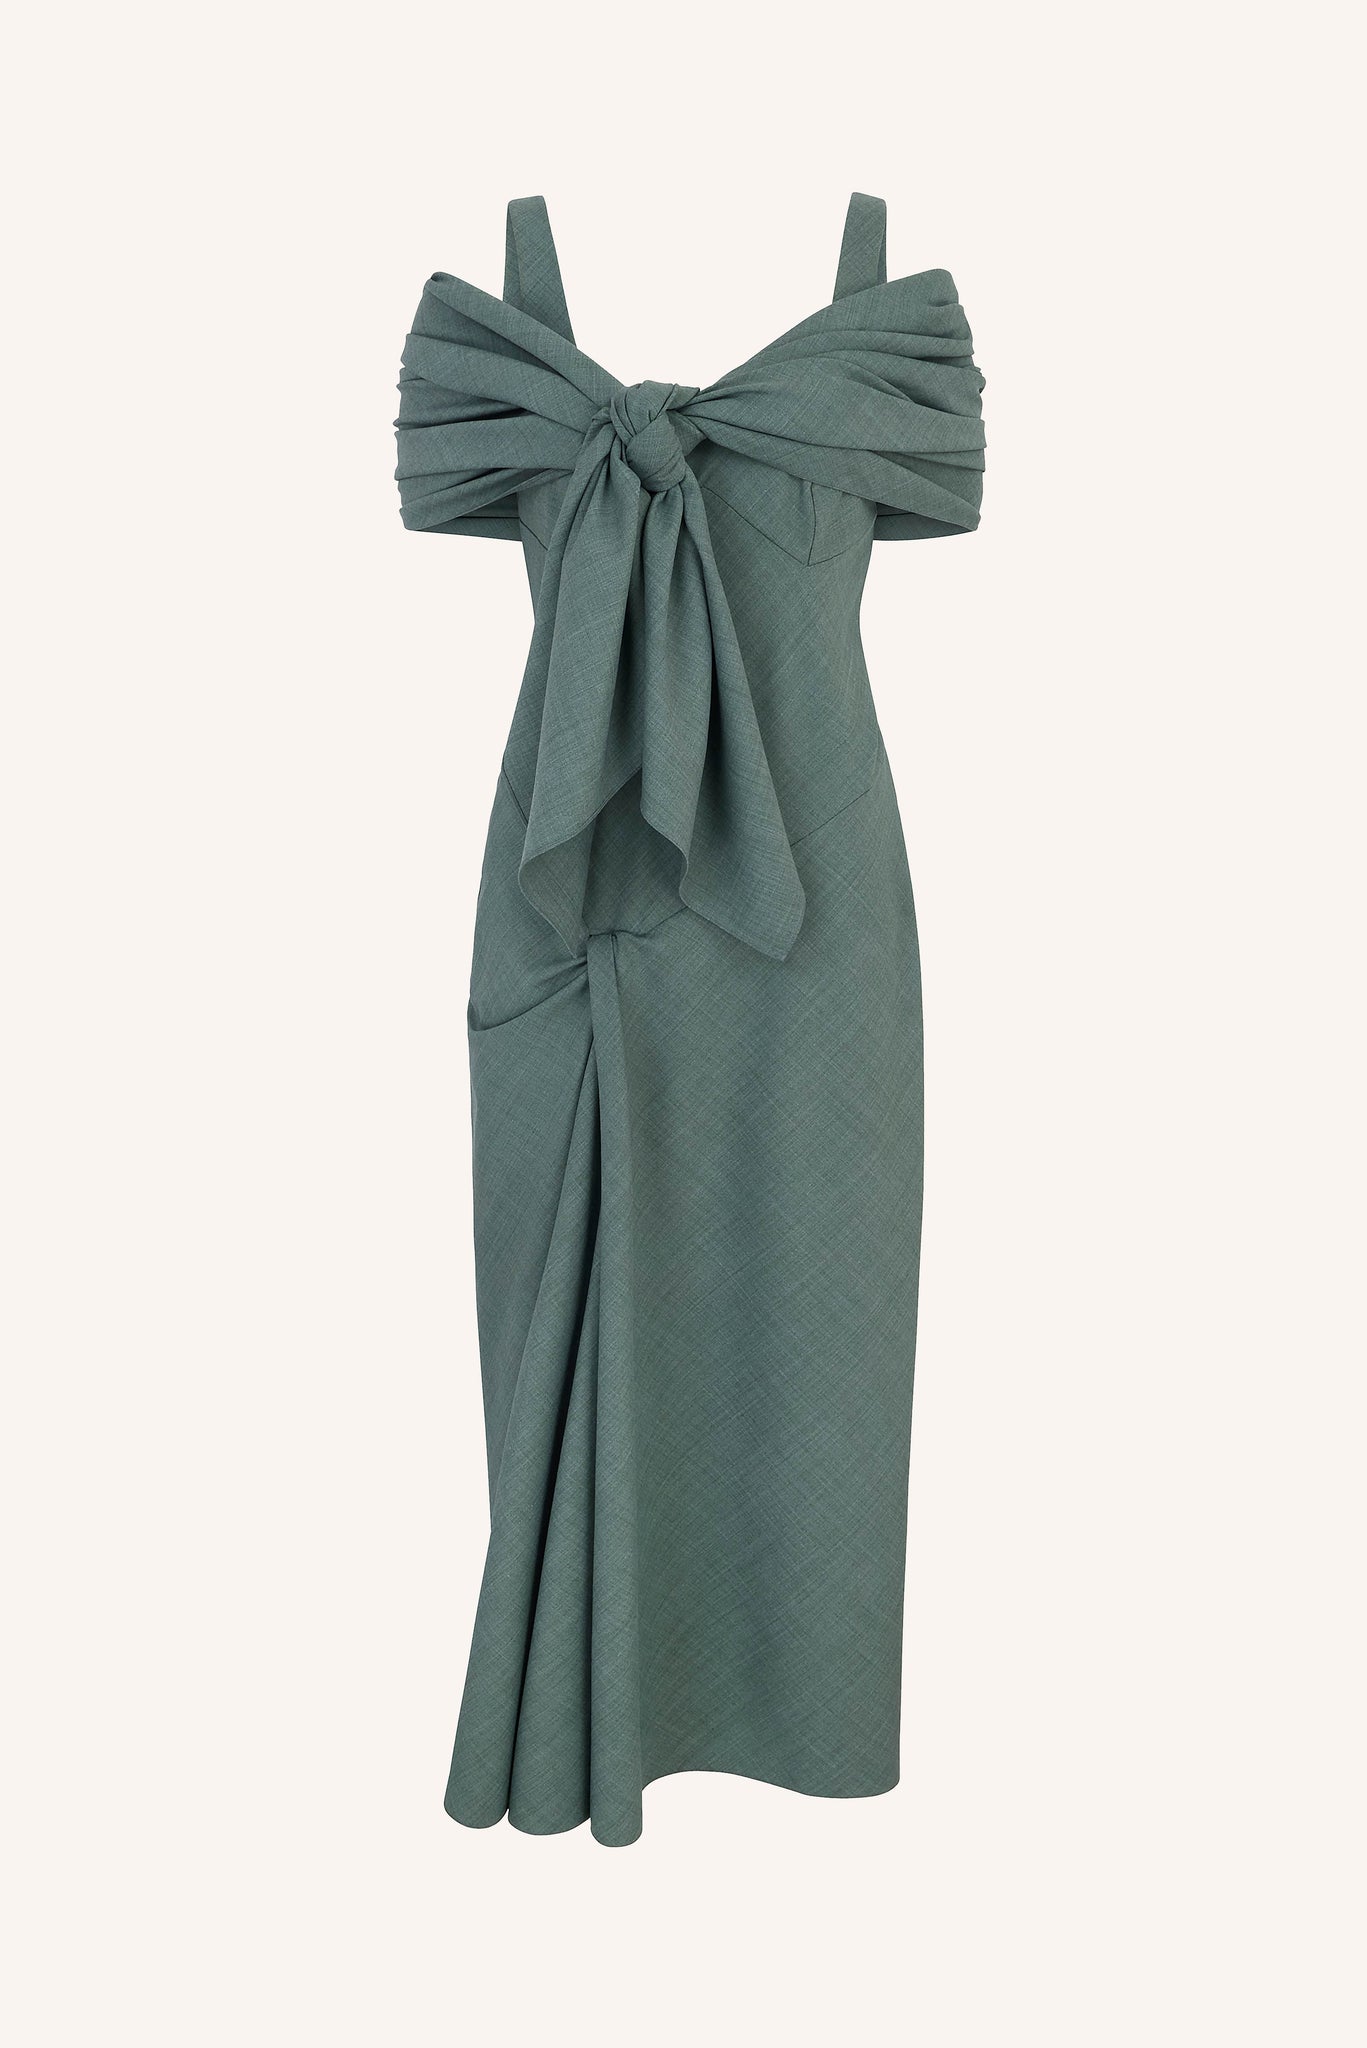 Barlowa Scarf Tie Dress in Khaki Summer Wool | Emilia Wickstead